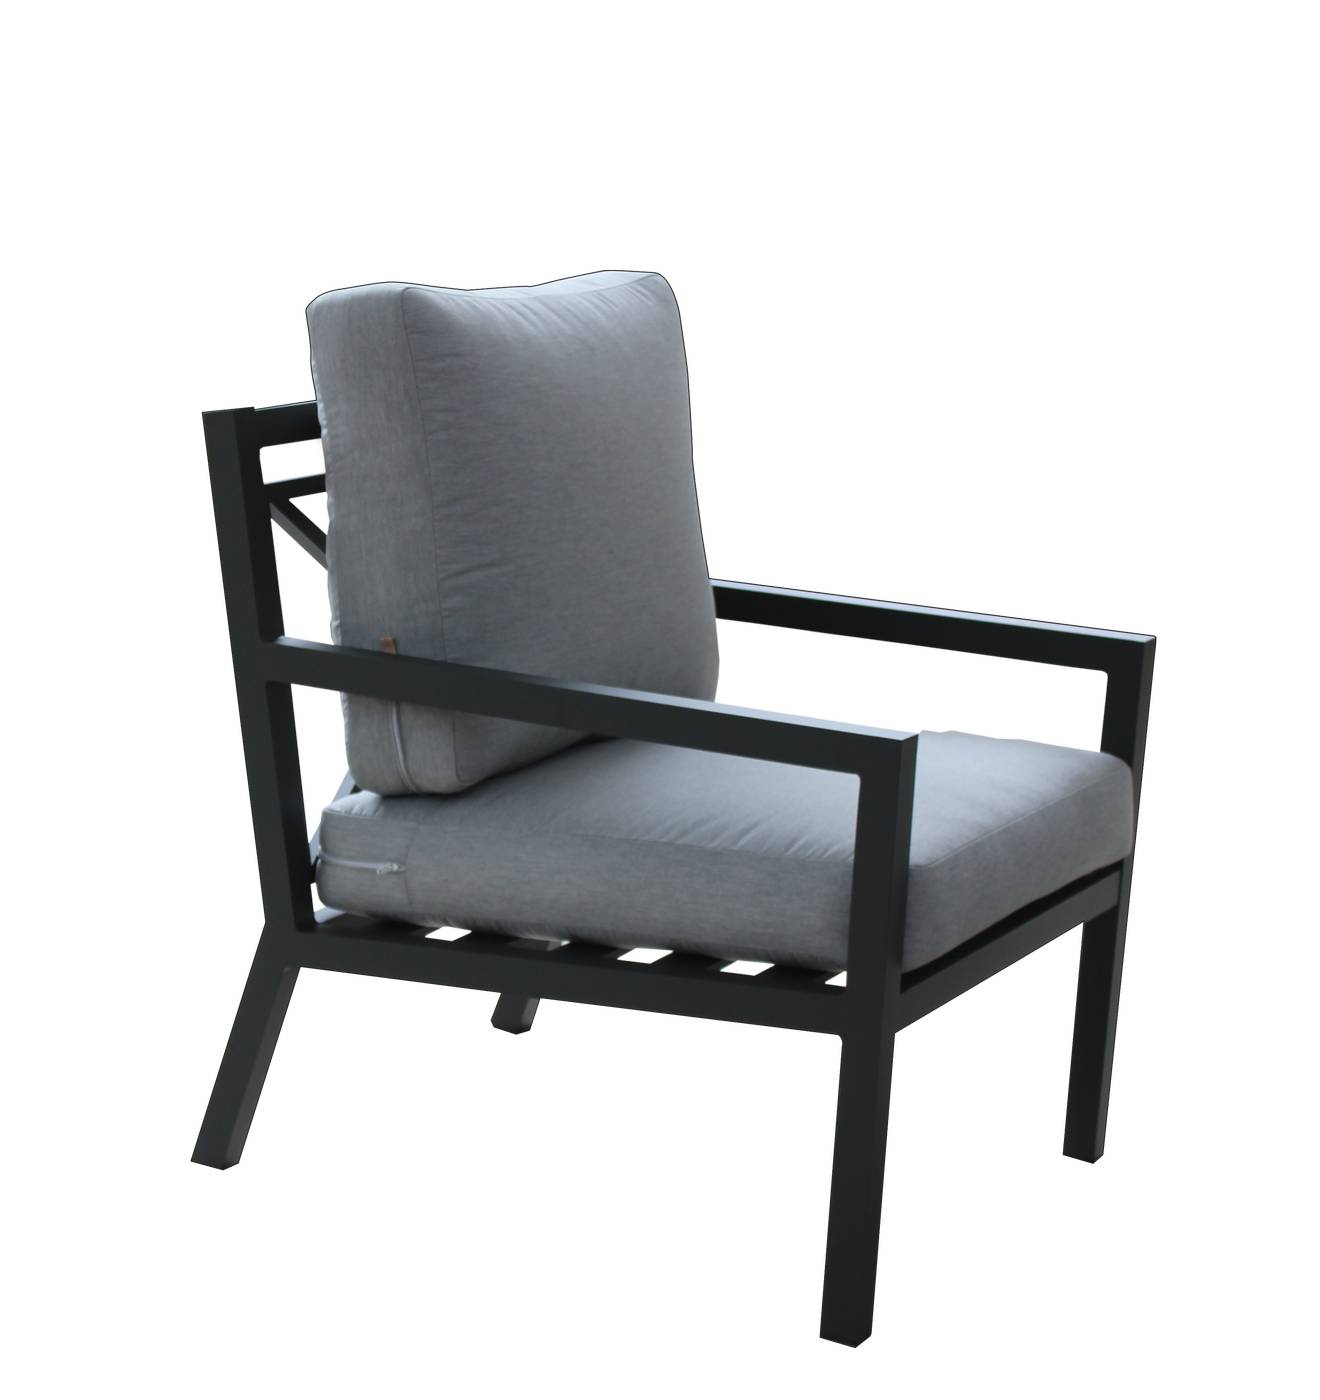 Set Aluminio Luxe Dounvil-8 - Conjunto de aluminio de lujo que incluye: un sofá tres plazas, dos sillones, una mesa de centro y cojines.